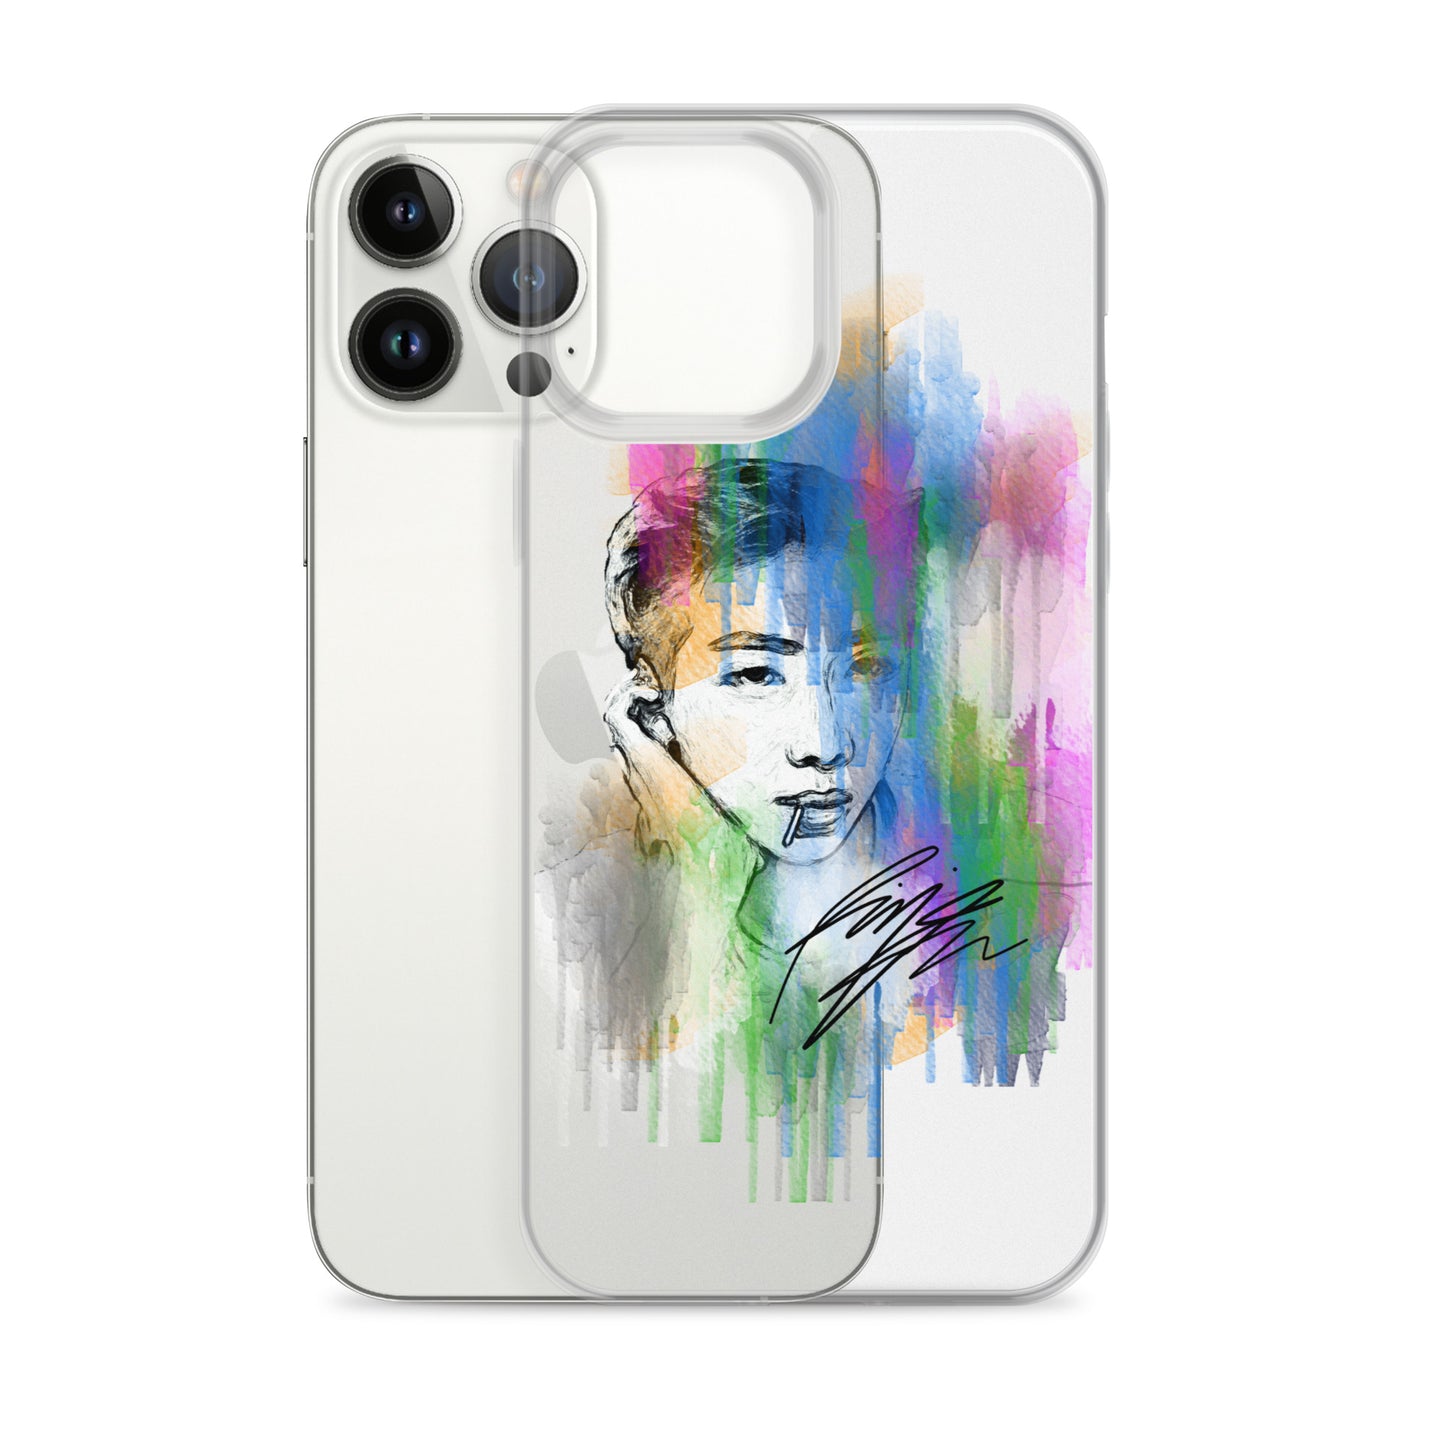 BTS RM, Kim Nam-joon Waterpaint portrait iPhone Case